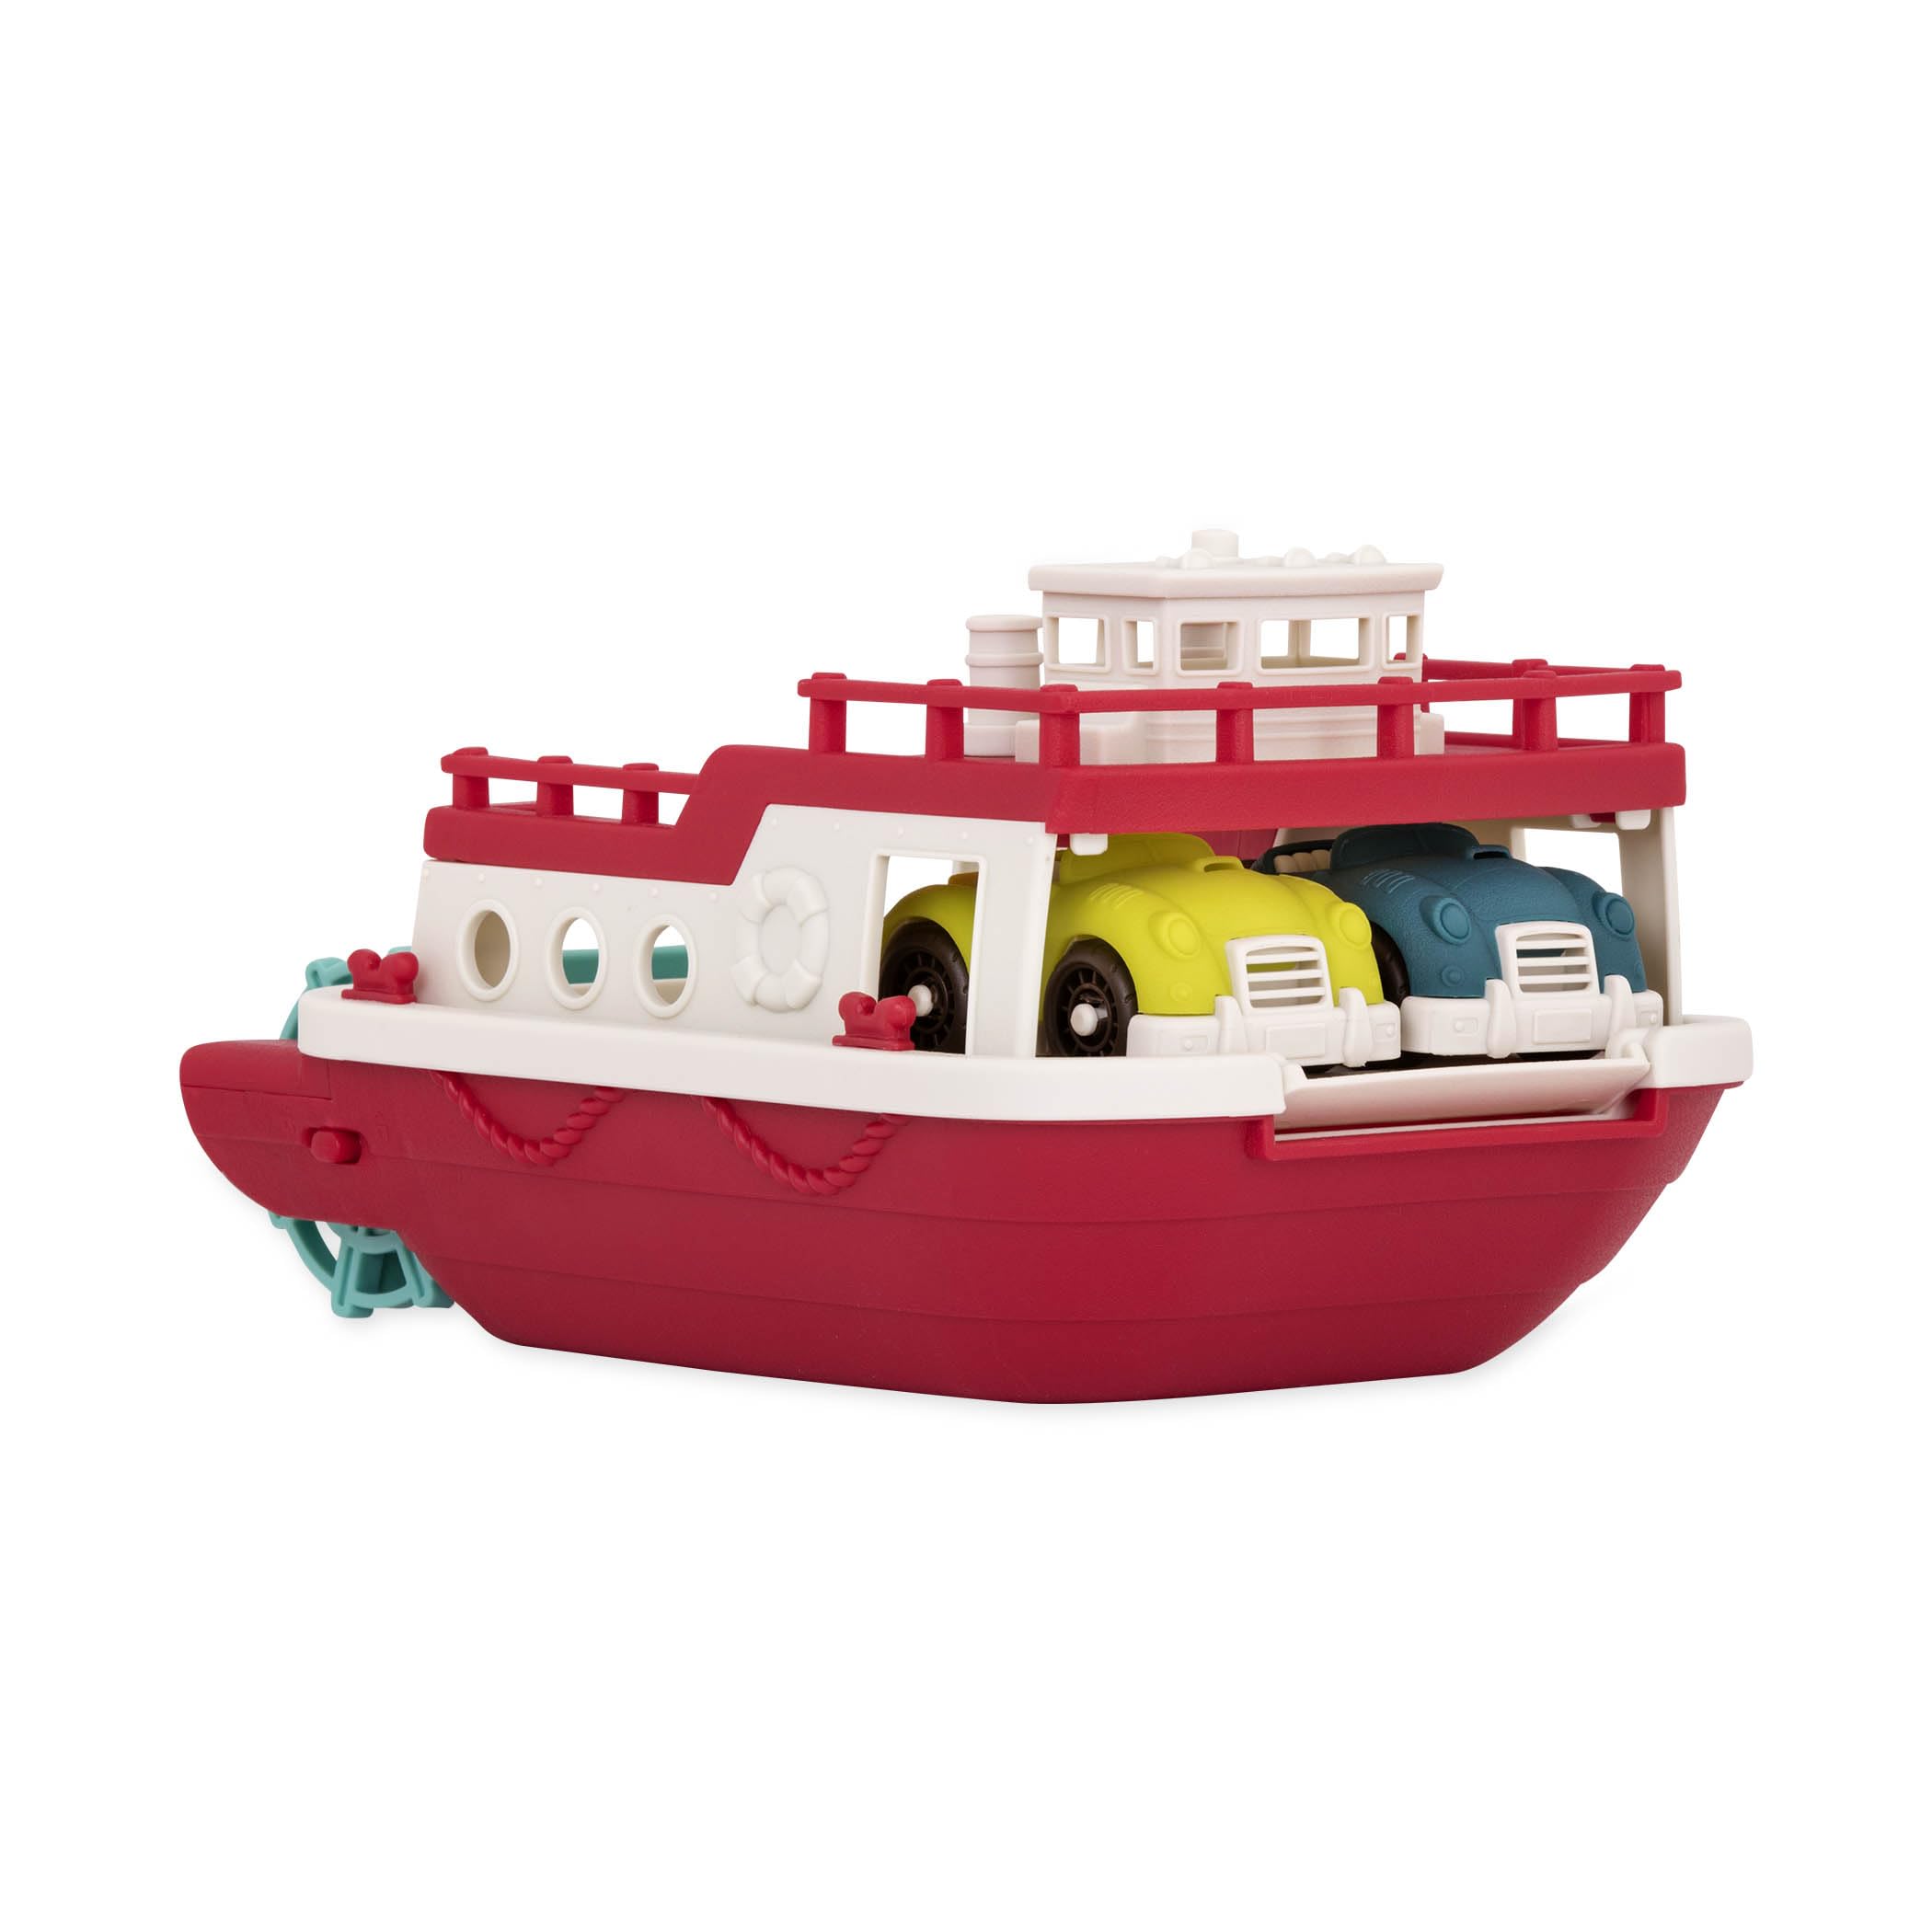 Wonder Wheels by Battat Ferry Boat Bath Toy, Large Boat Toy, 1 Year Plus